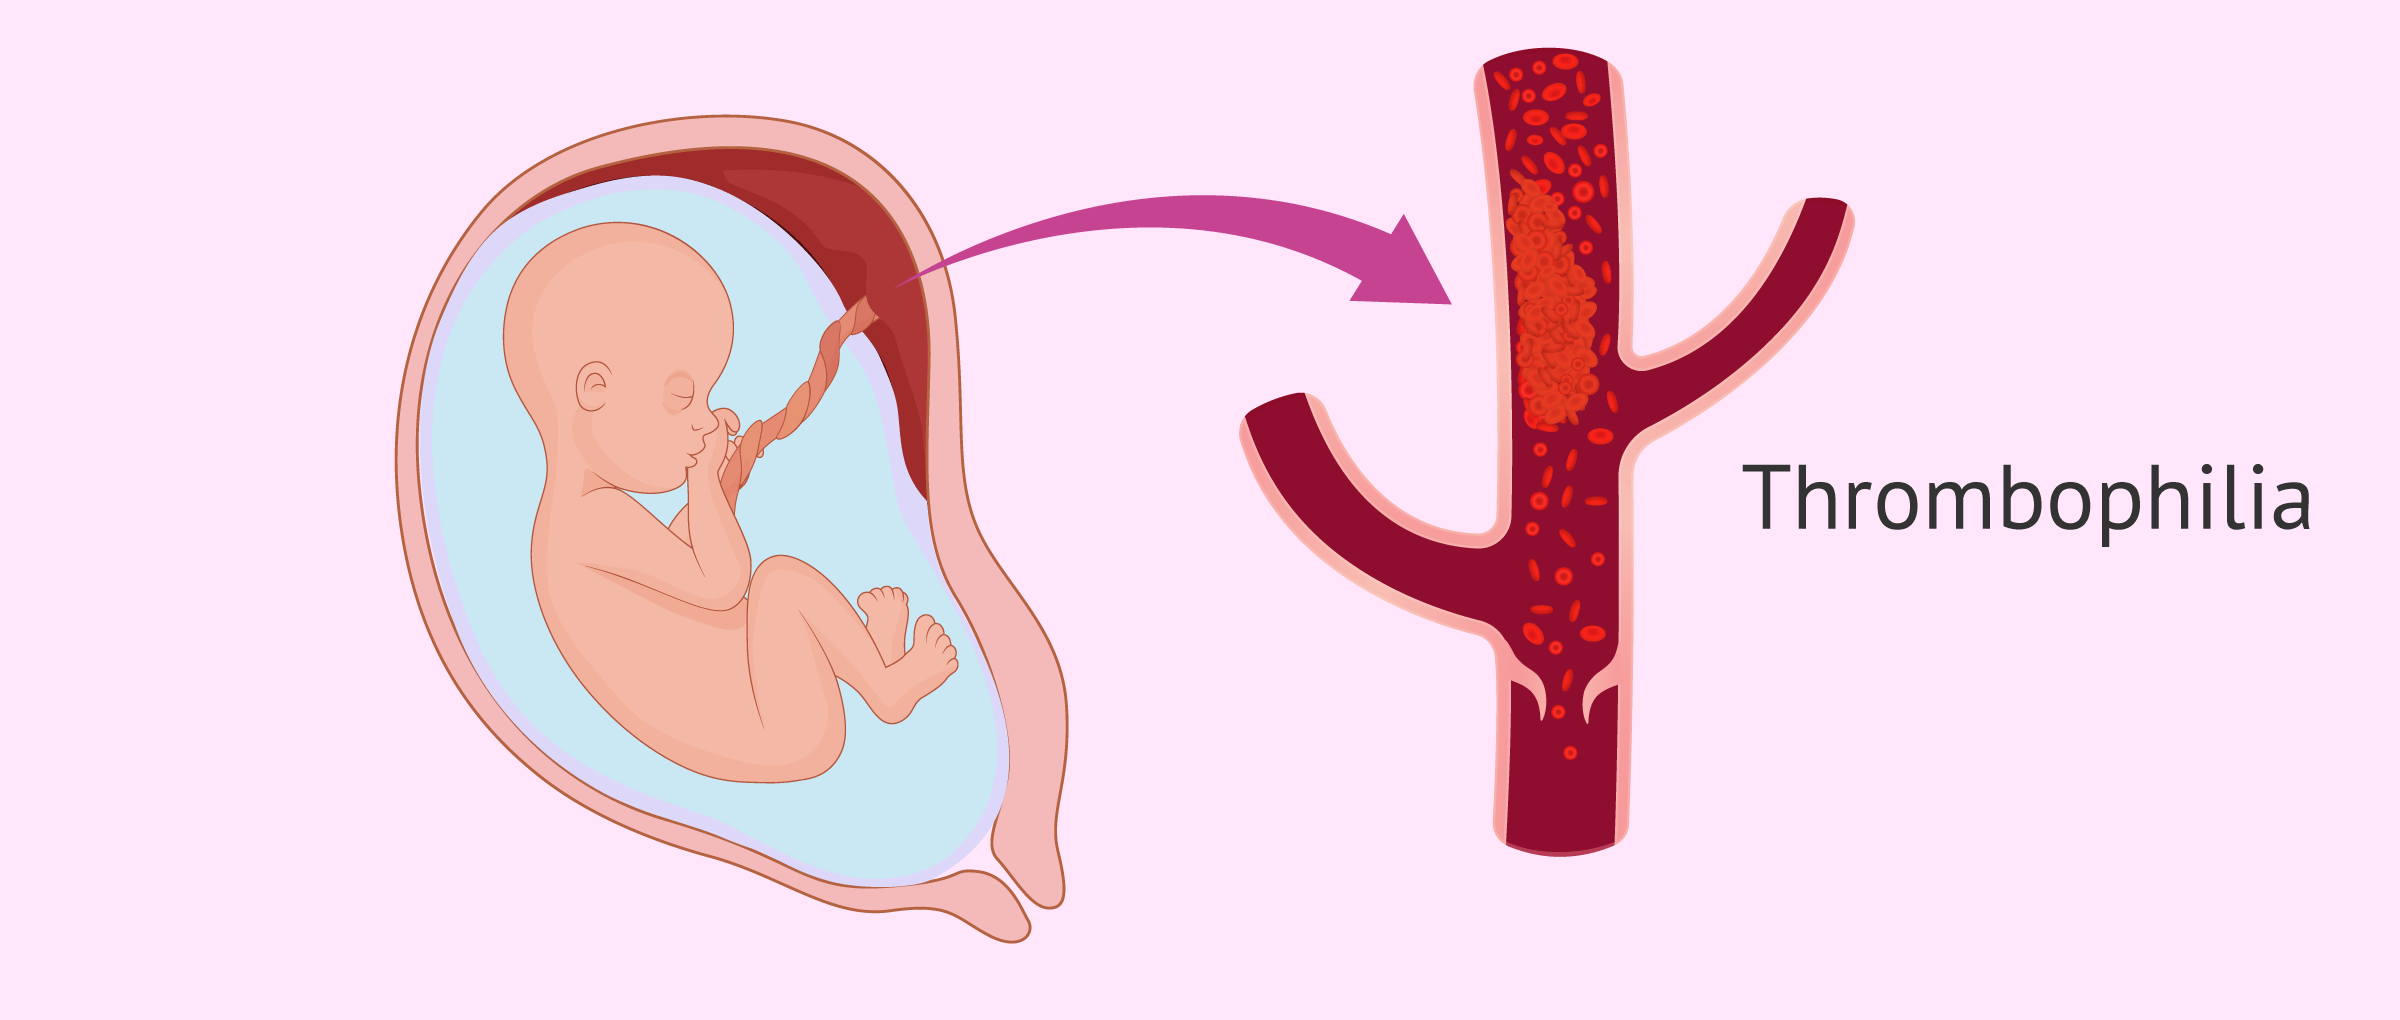 Thrombophilia during pregnancy